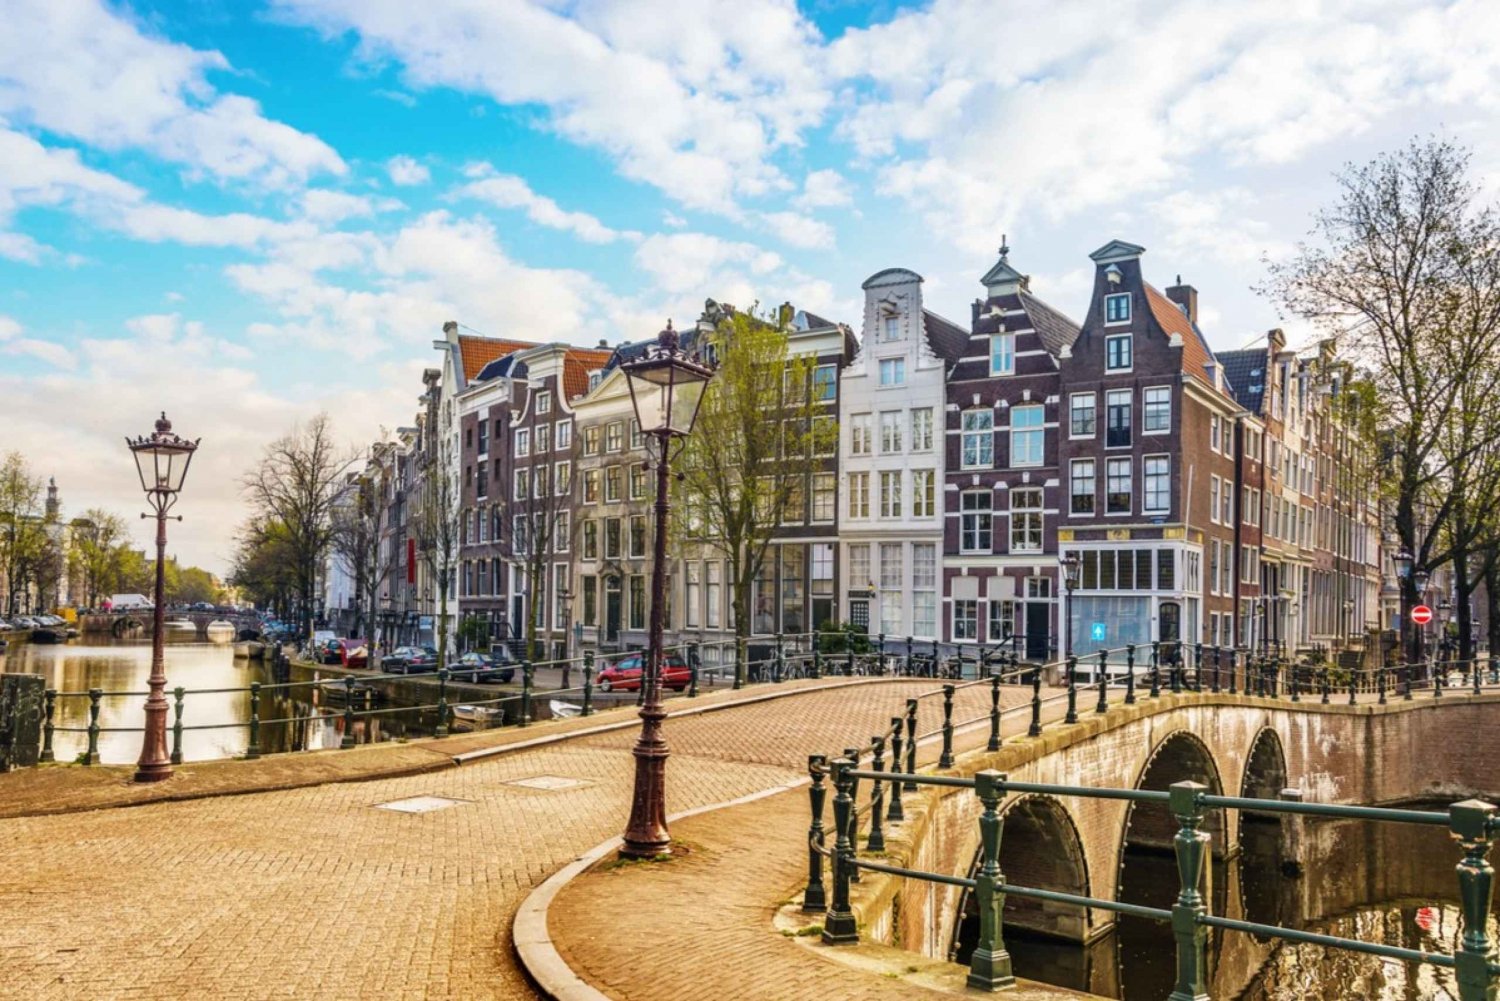 Amsterdams gamle bydel: Oplevelse af sømandens skattejagt